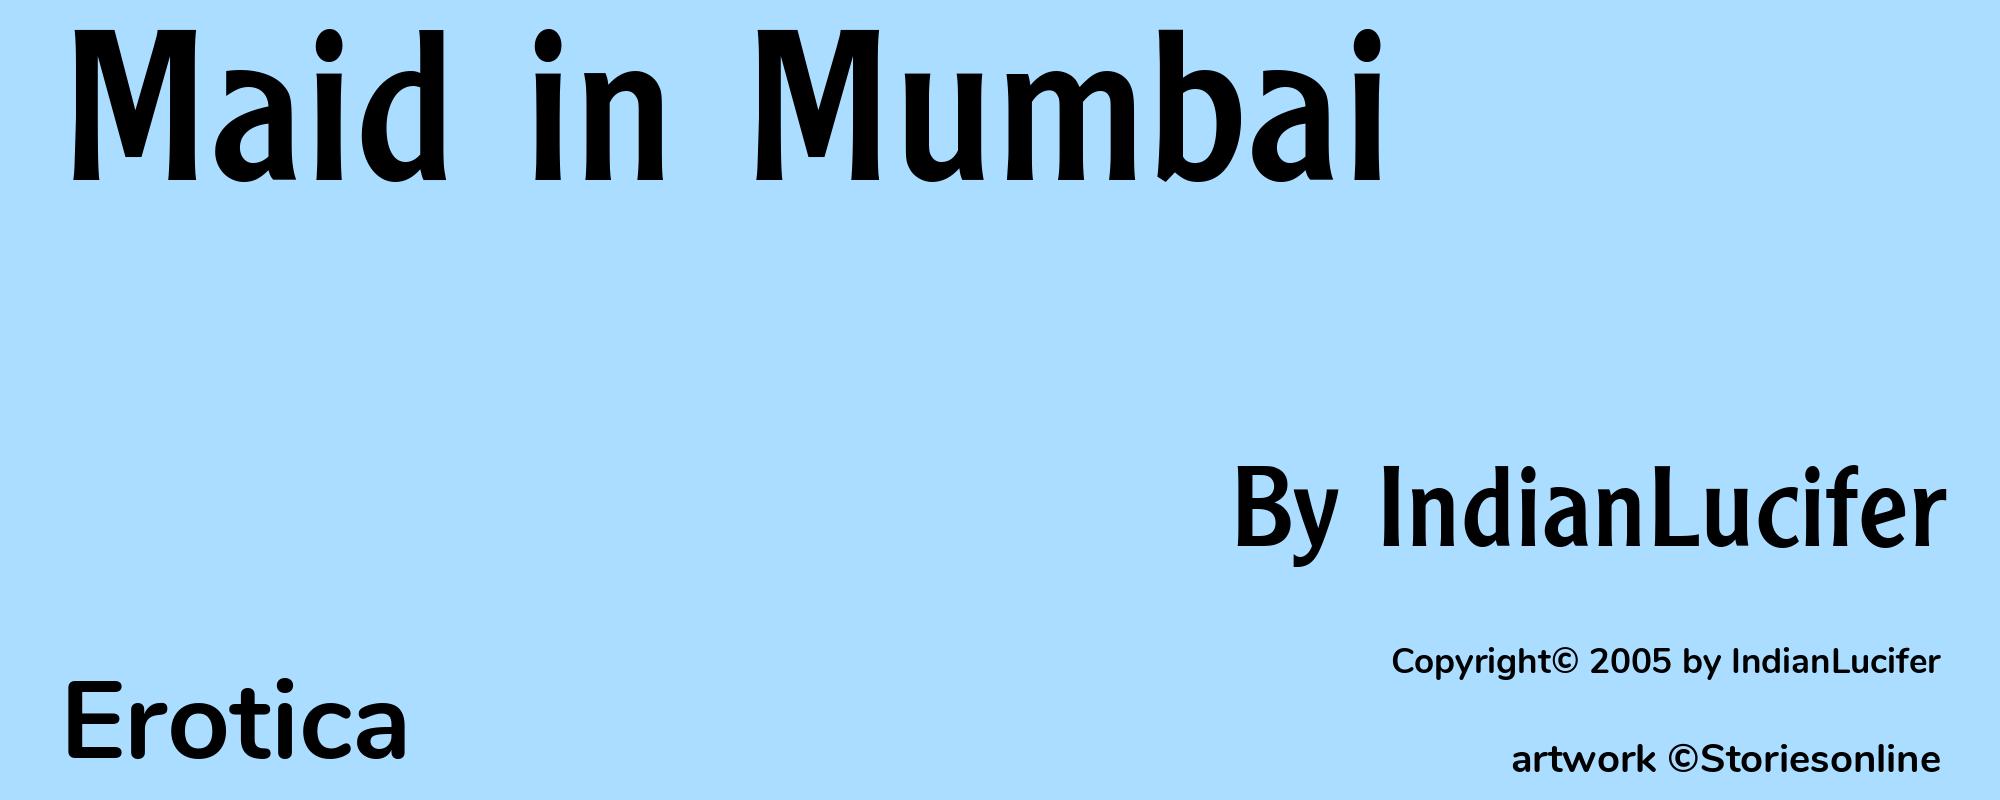 Maid in Mumbai - Cover